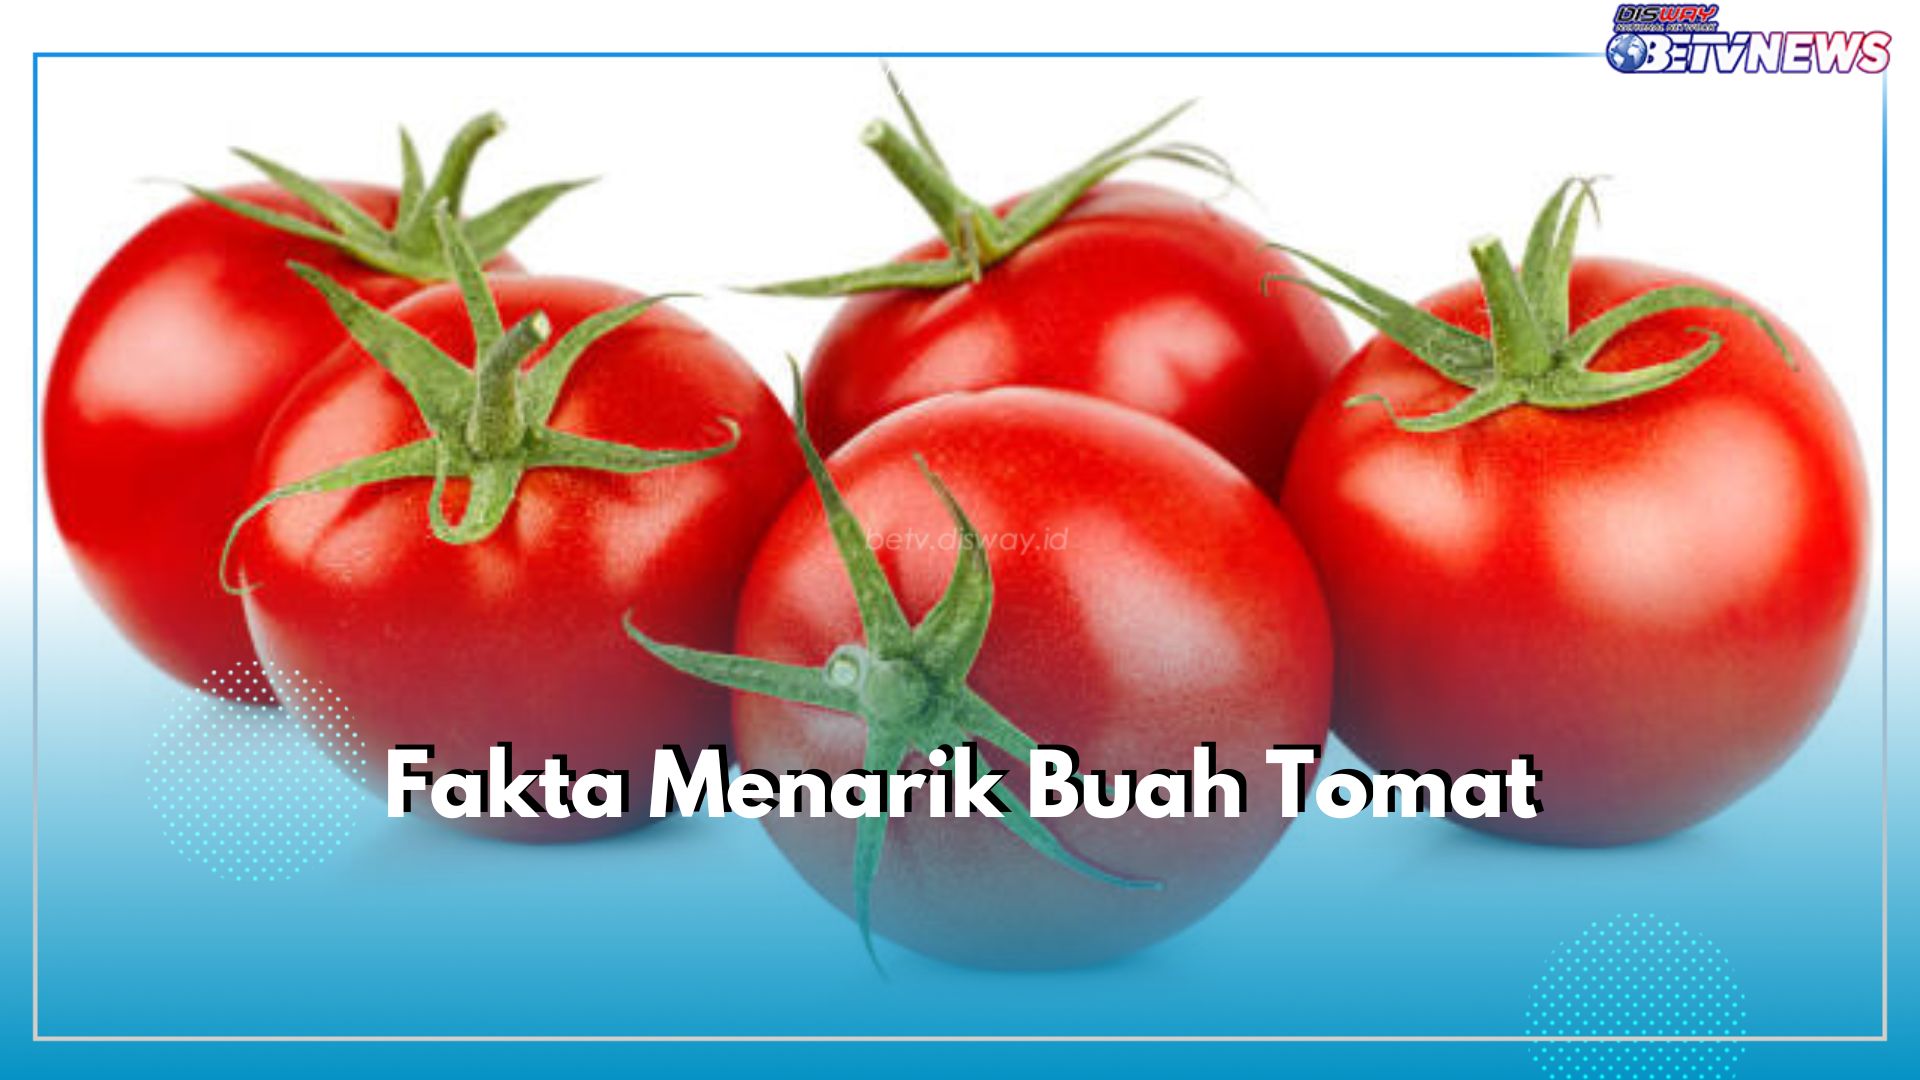 Ini 8 Fakta Menarik Buah Tomat yang Perlu Kamu Ketahui, Nomor 3 Tidak Terduga!